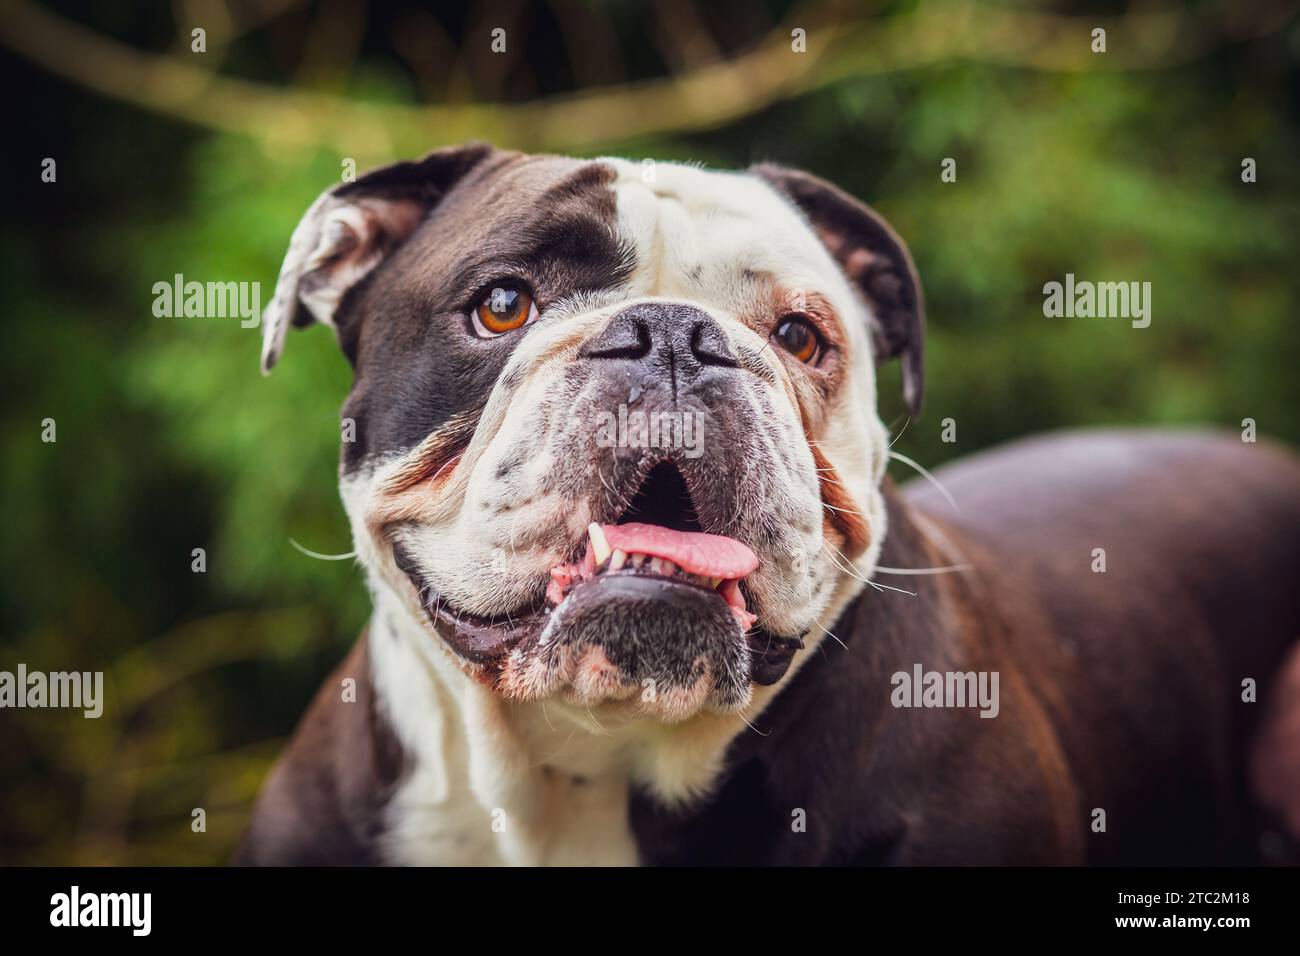 Un adorable Olde English Bulldogge montrant sa langue. Photographie prise en France Banque D'Images